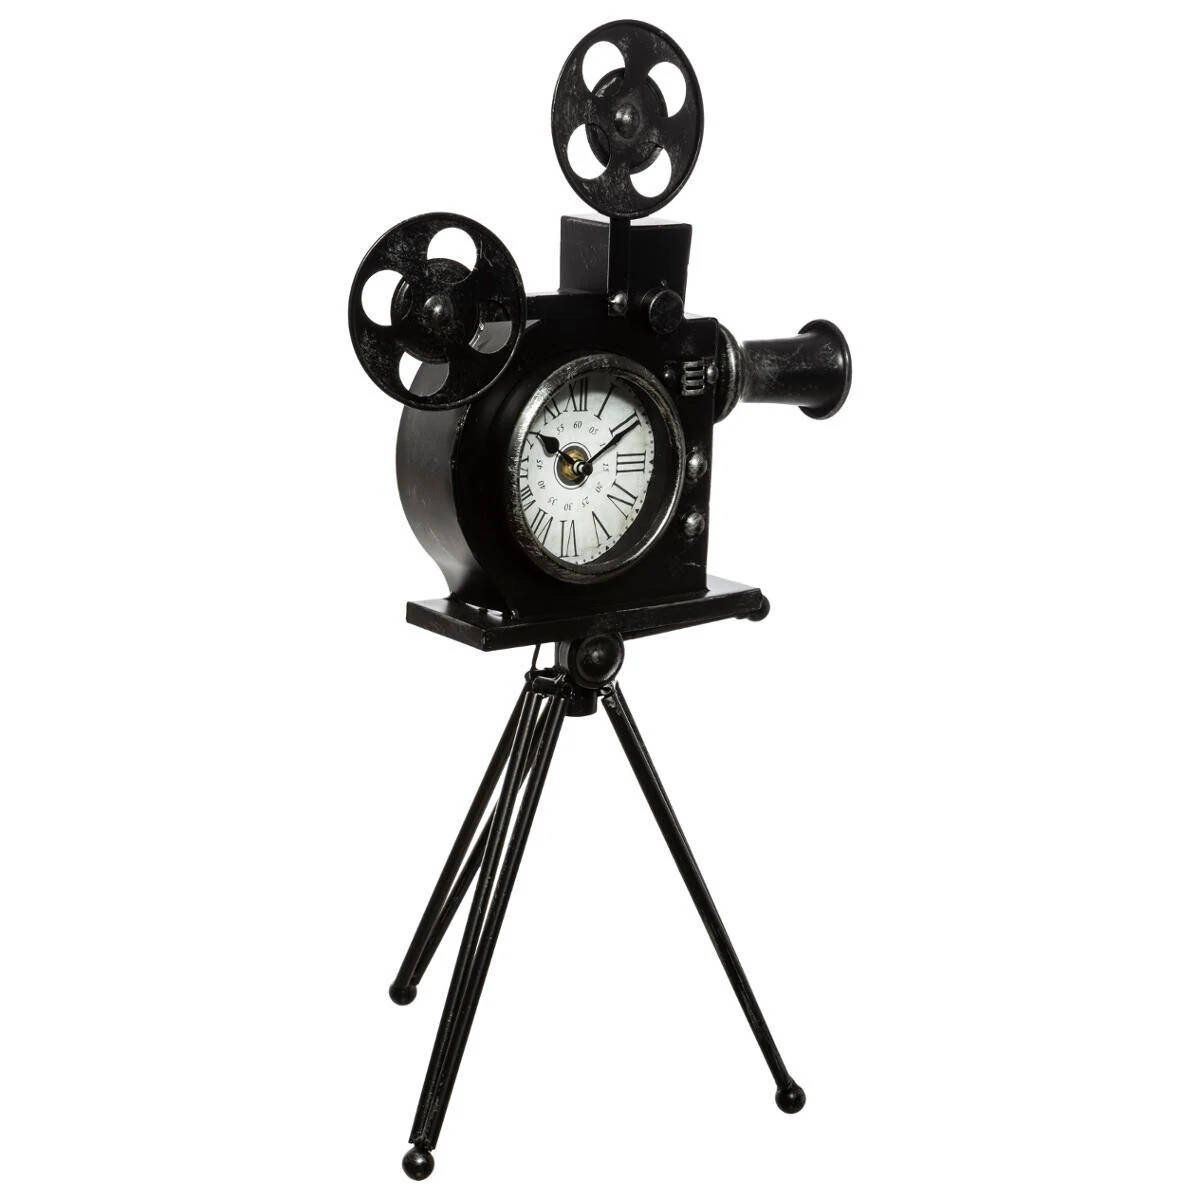 Atmosphera Dekorativní hodiny KAMERA, výška 51,5 cm, černé - EMAKO.CZ s.r.o.